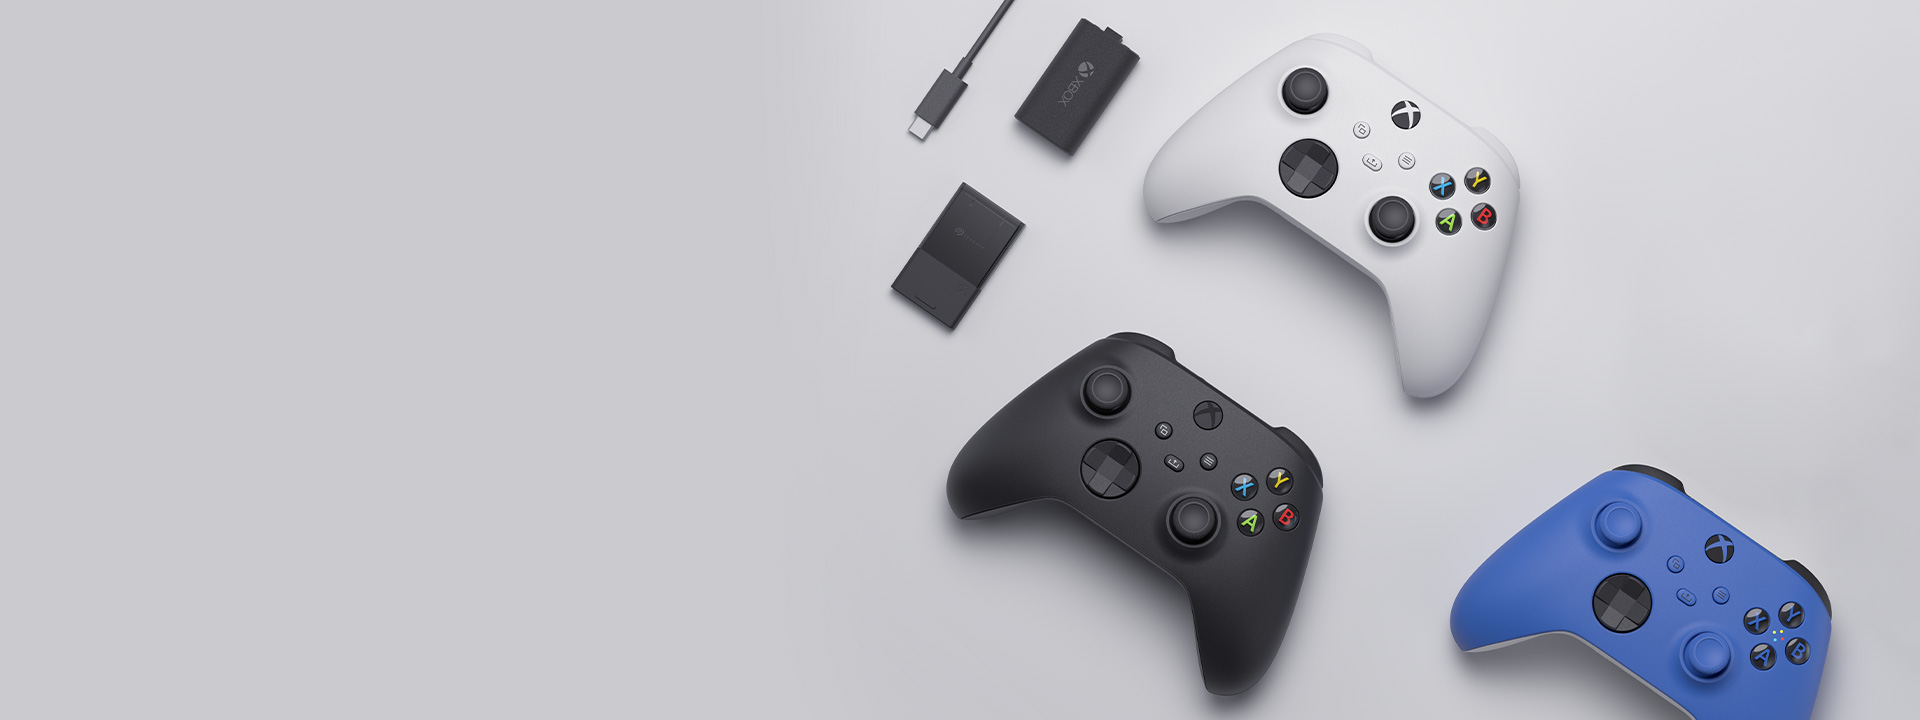 Vari accessori per Xbox tra cui il Controller Wireless per Xbox, il kit Play and Charge e la scheda di espansione di memorizzazione Seagate per Xbox Series X|S disposti uno accanto all'altro.